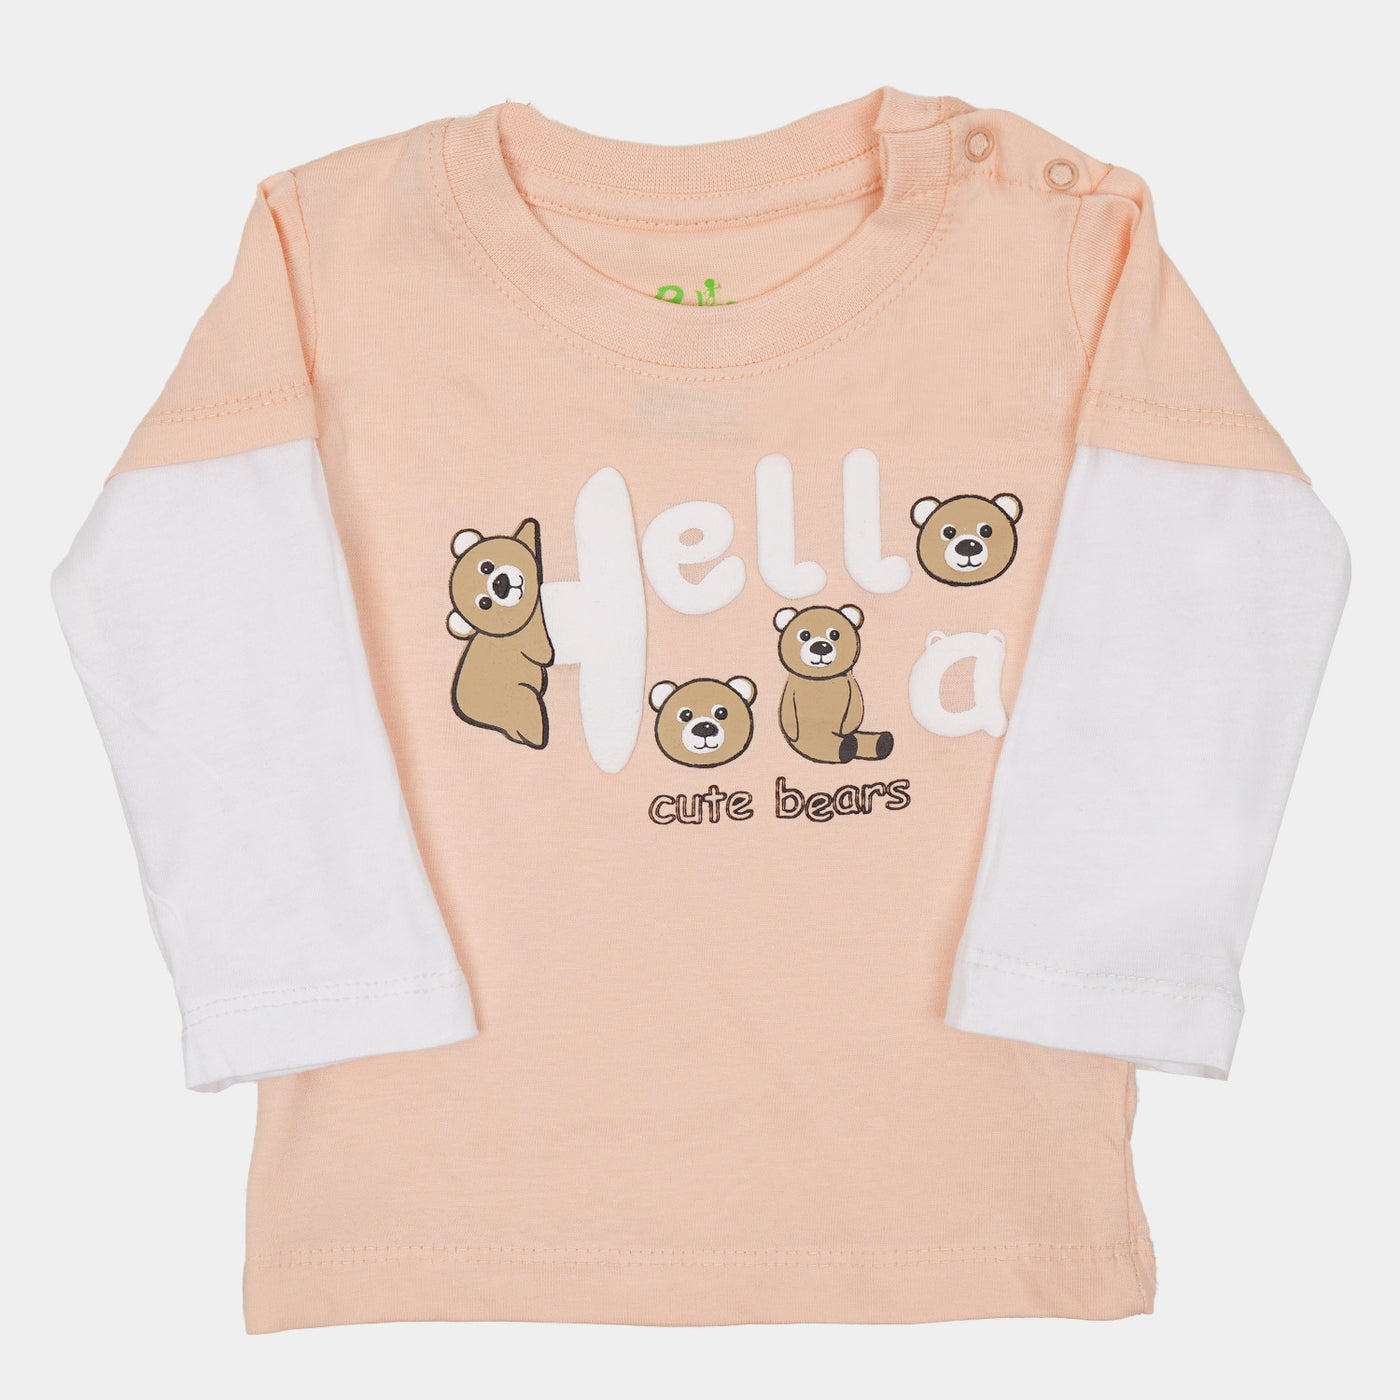 Infant Girls T-Shirt Hello Bear - Pale Peach